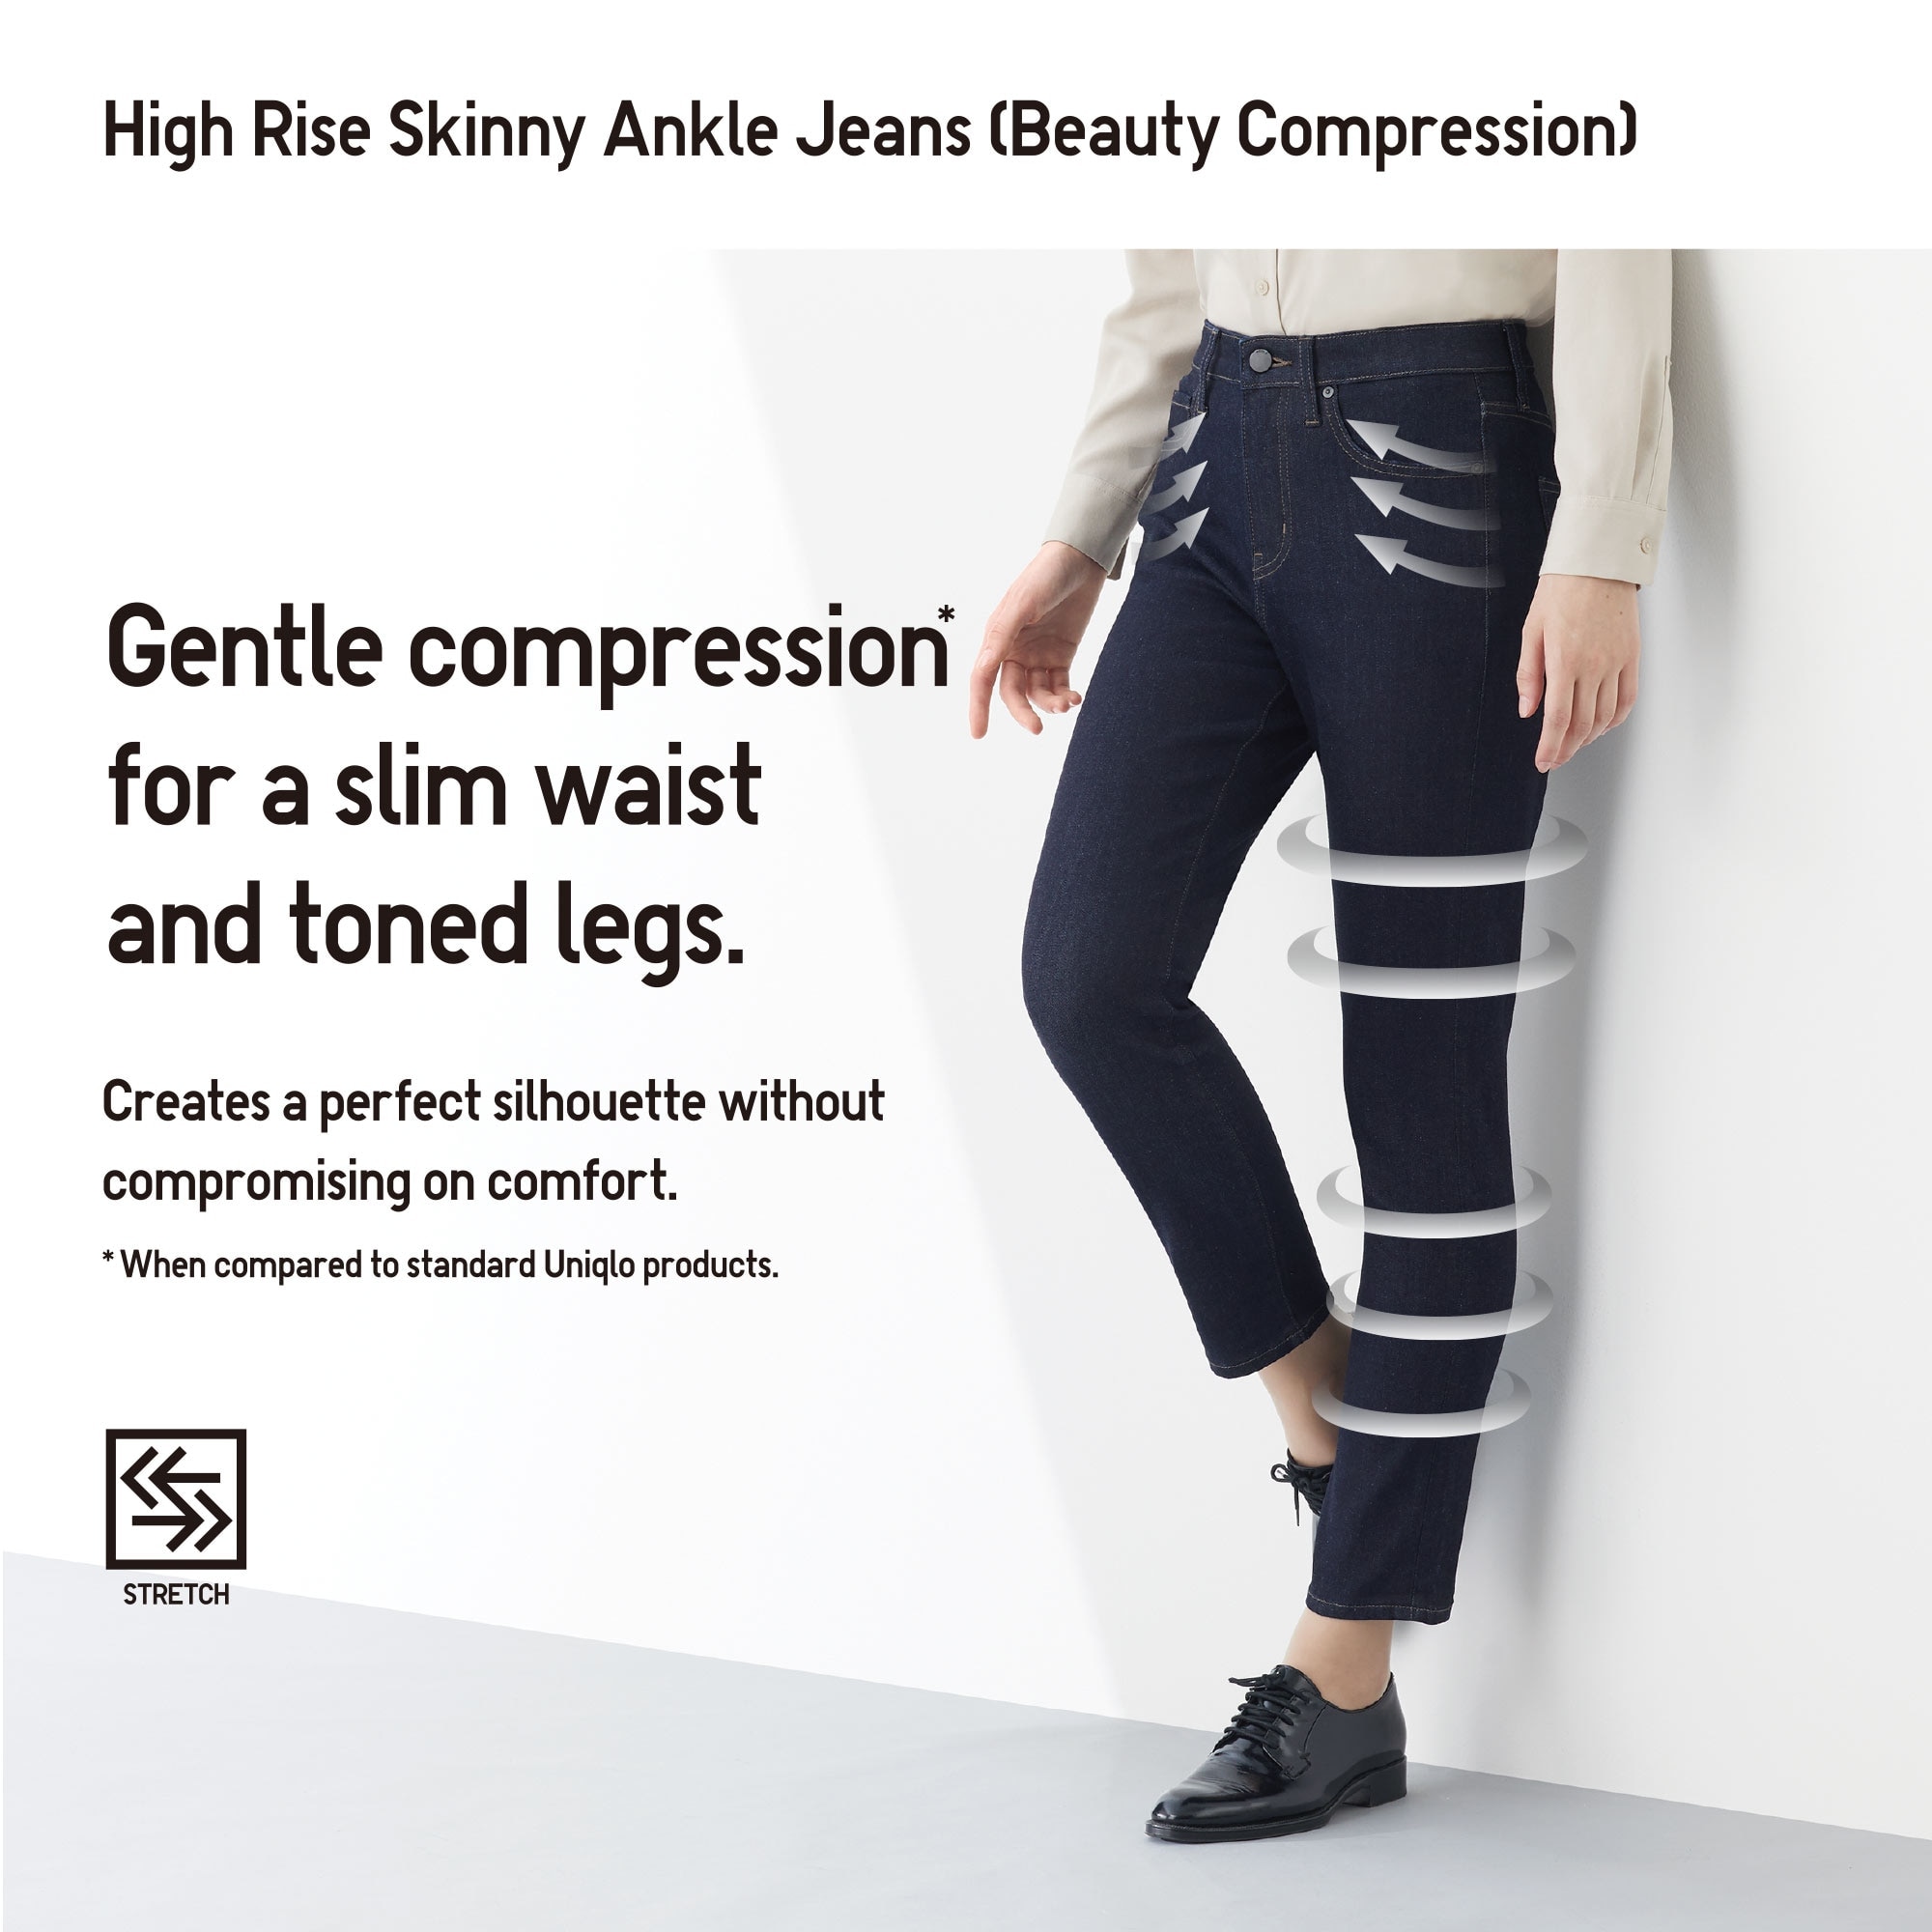 uniqlo beauty compression jeans